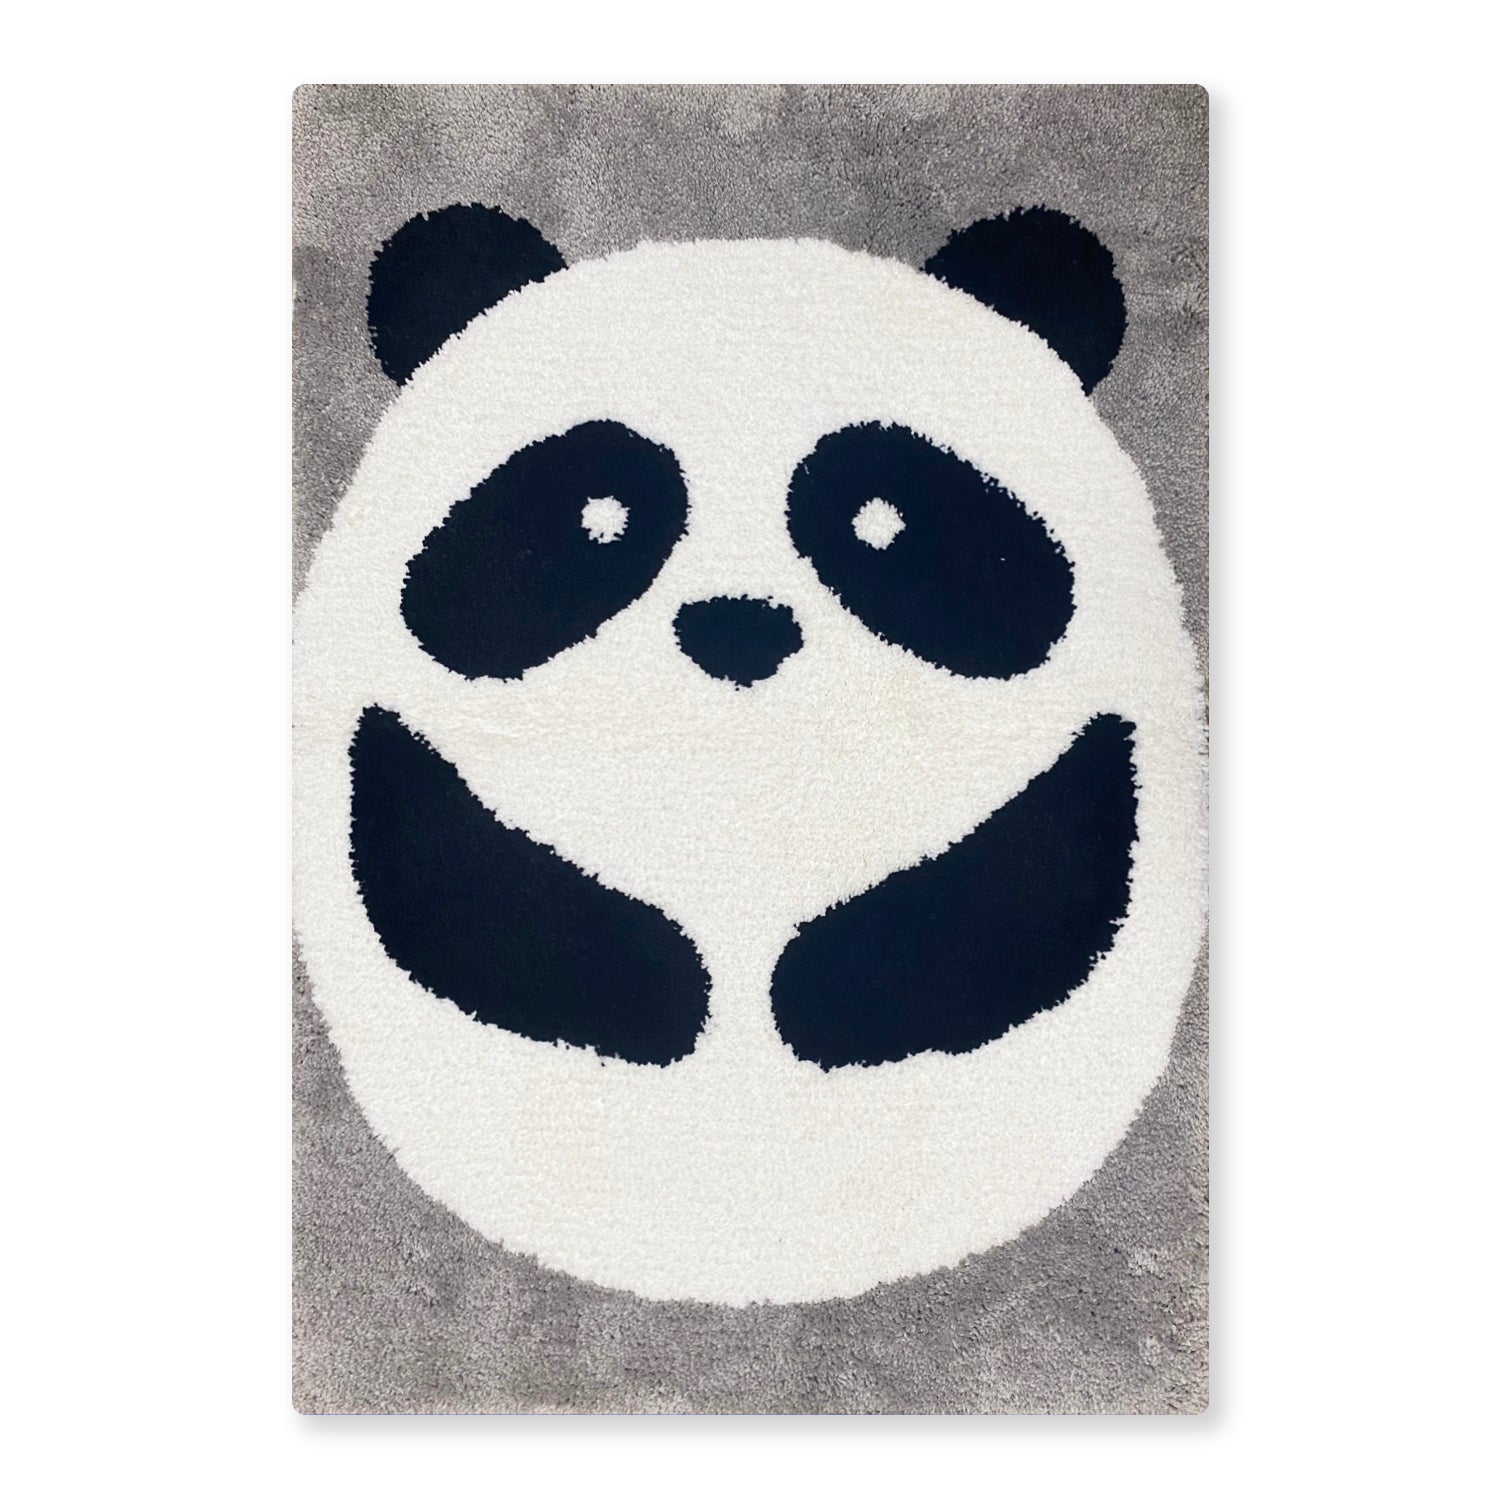 Cute Panda Bath Mat - Feblilac® Mat